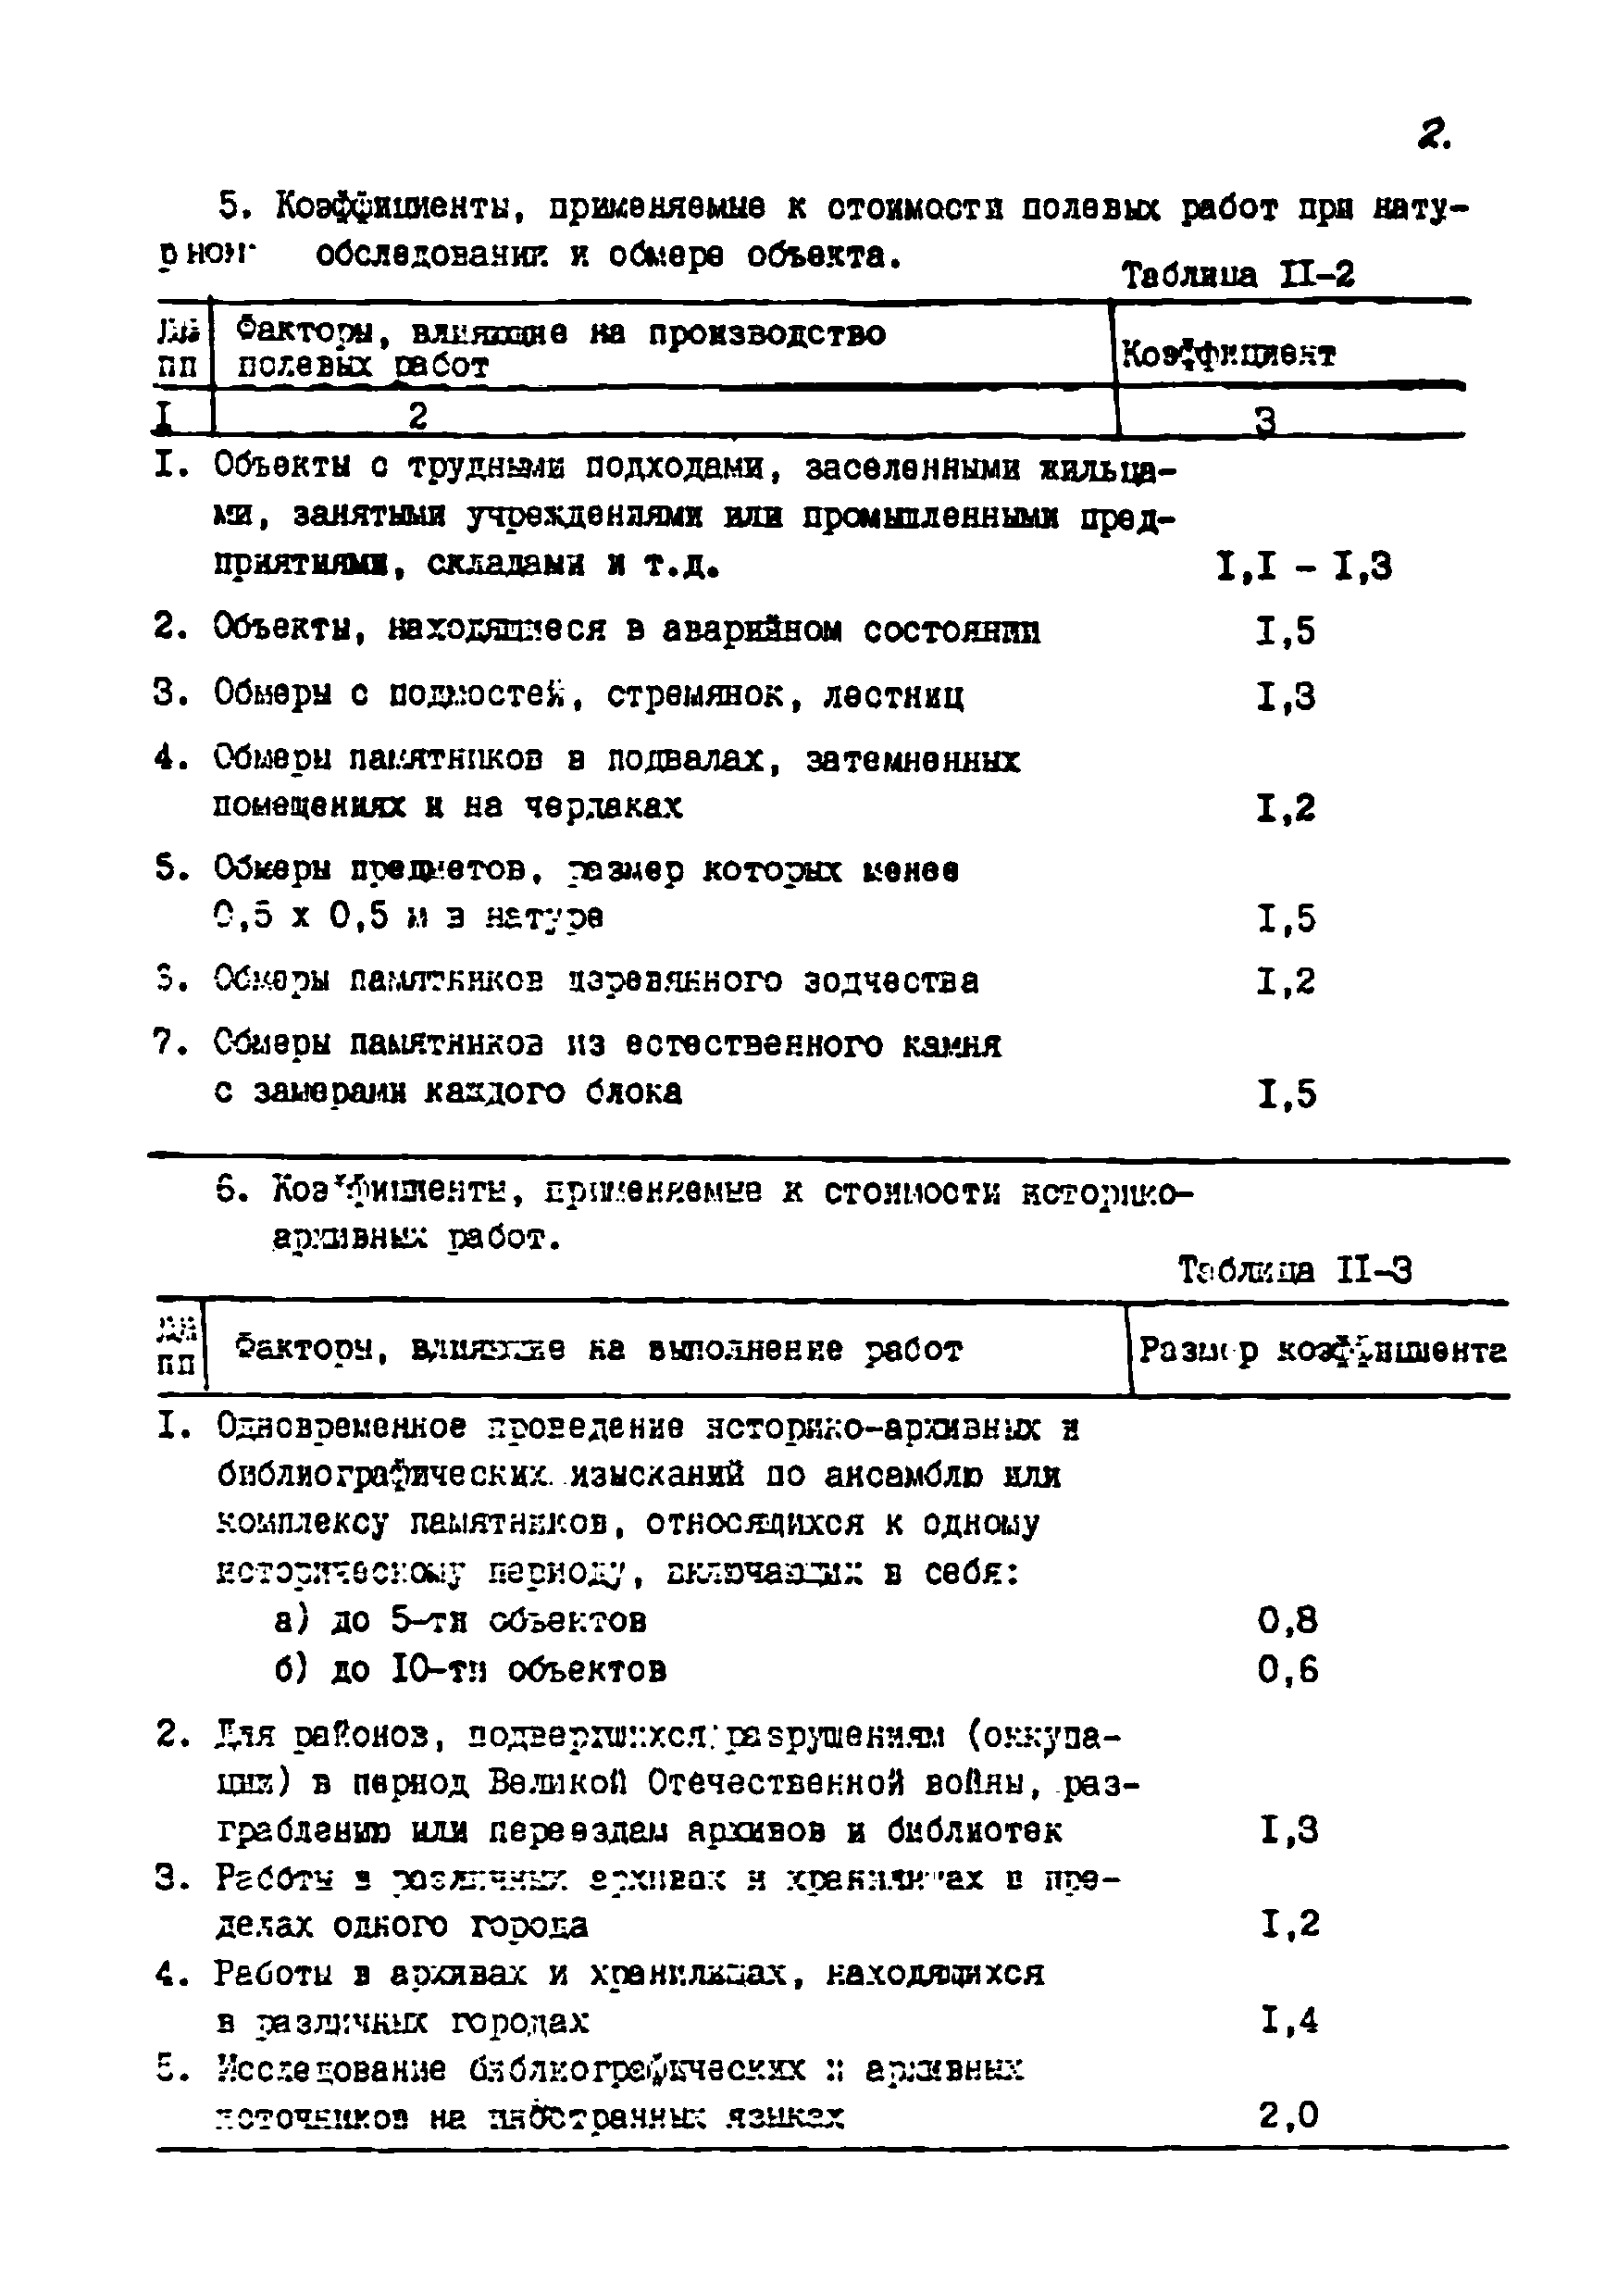 СЦНПР 91-11